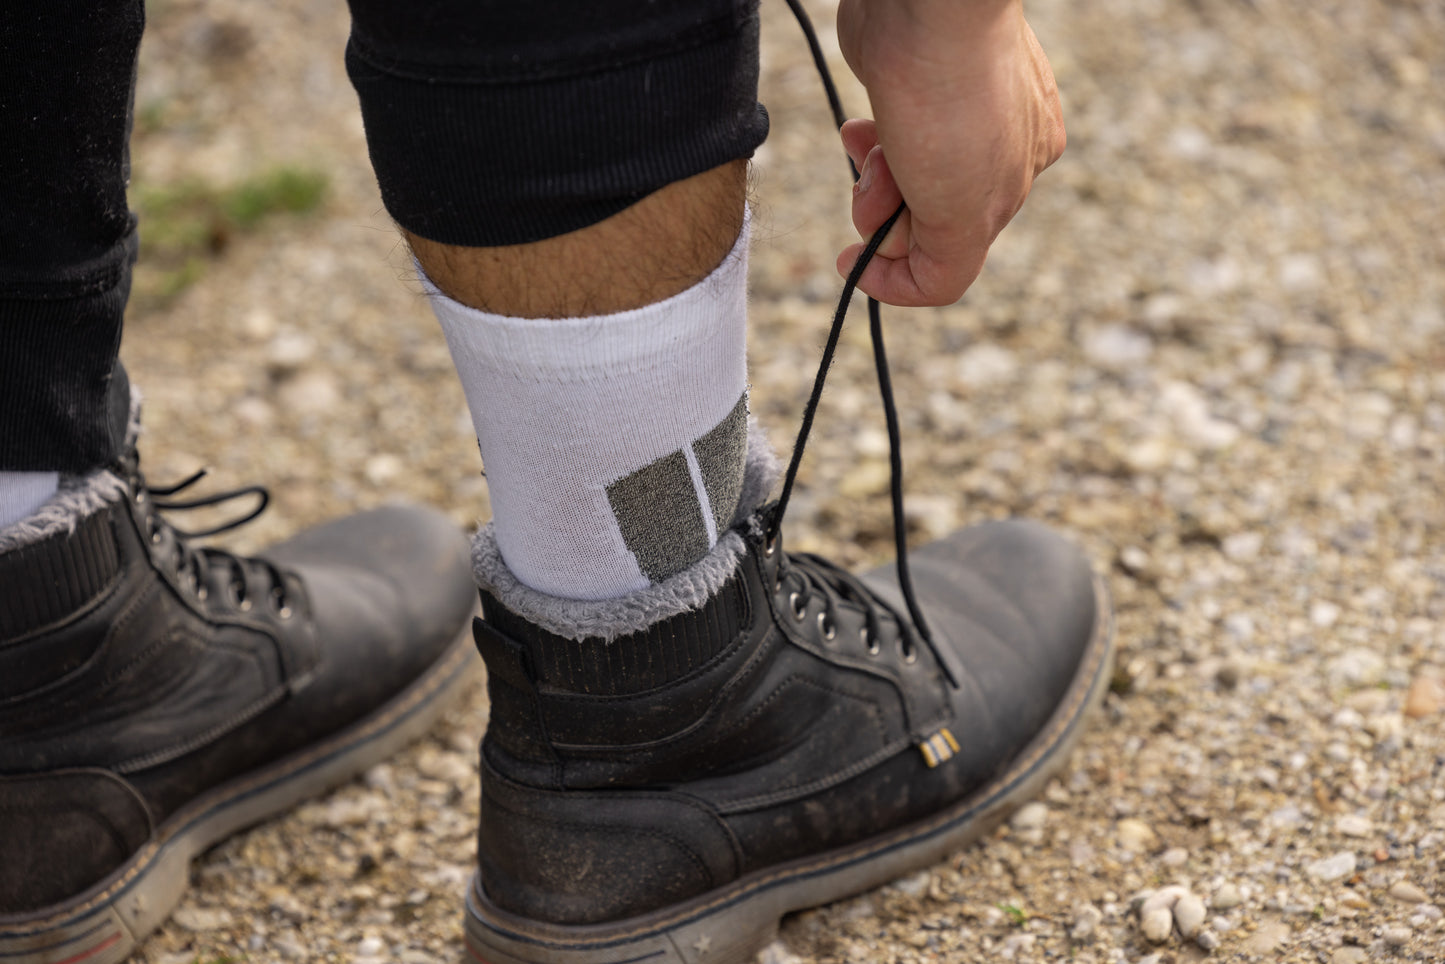 Premium Non-Slip Hiking Socks